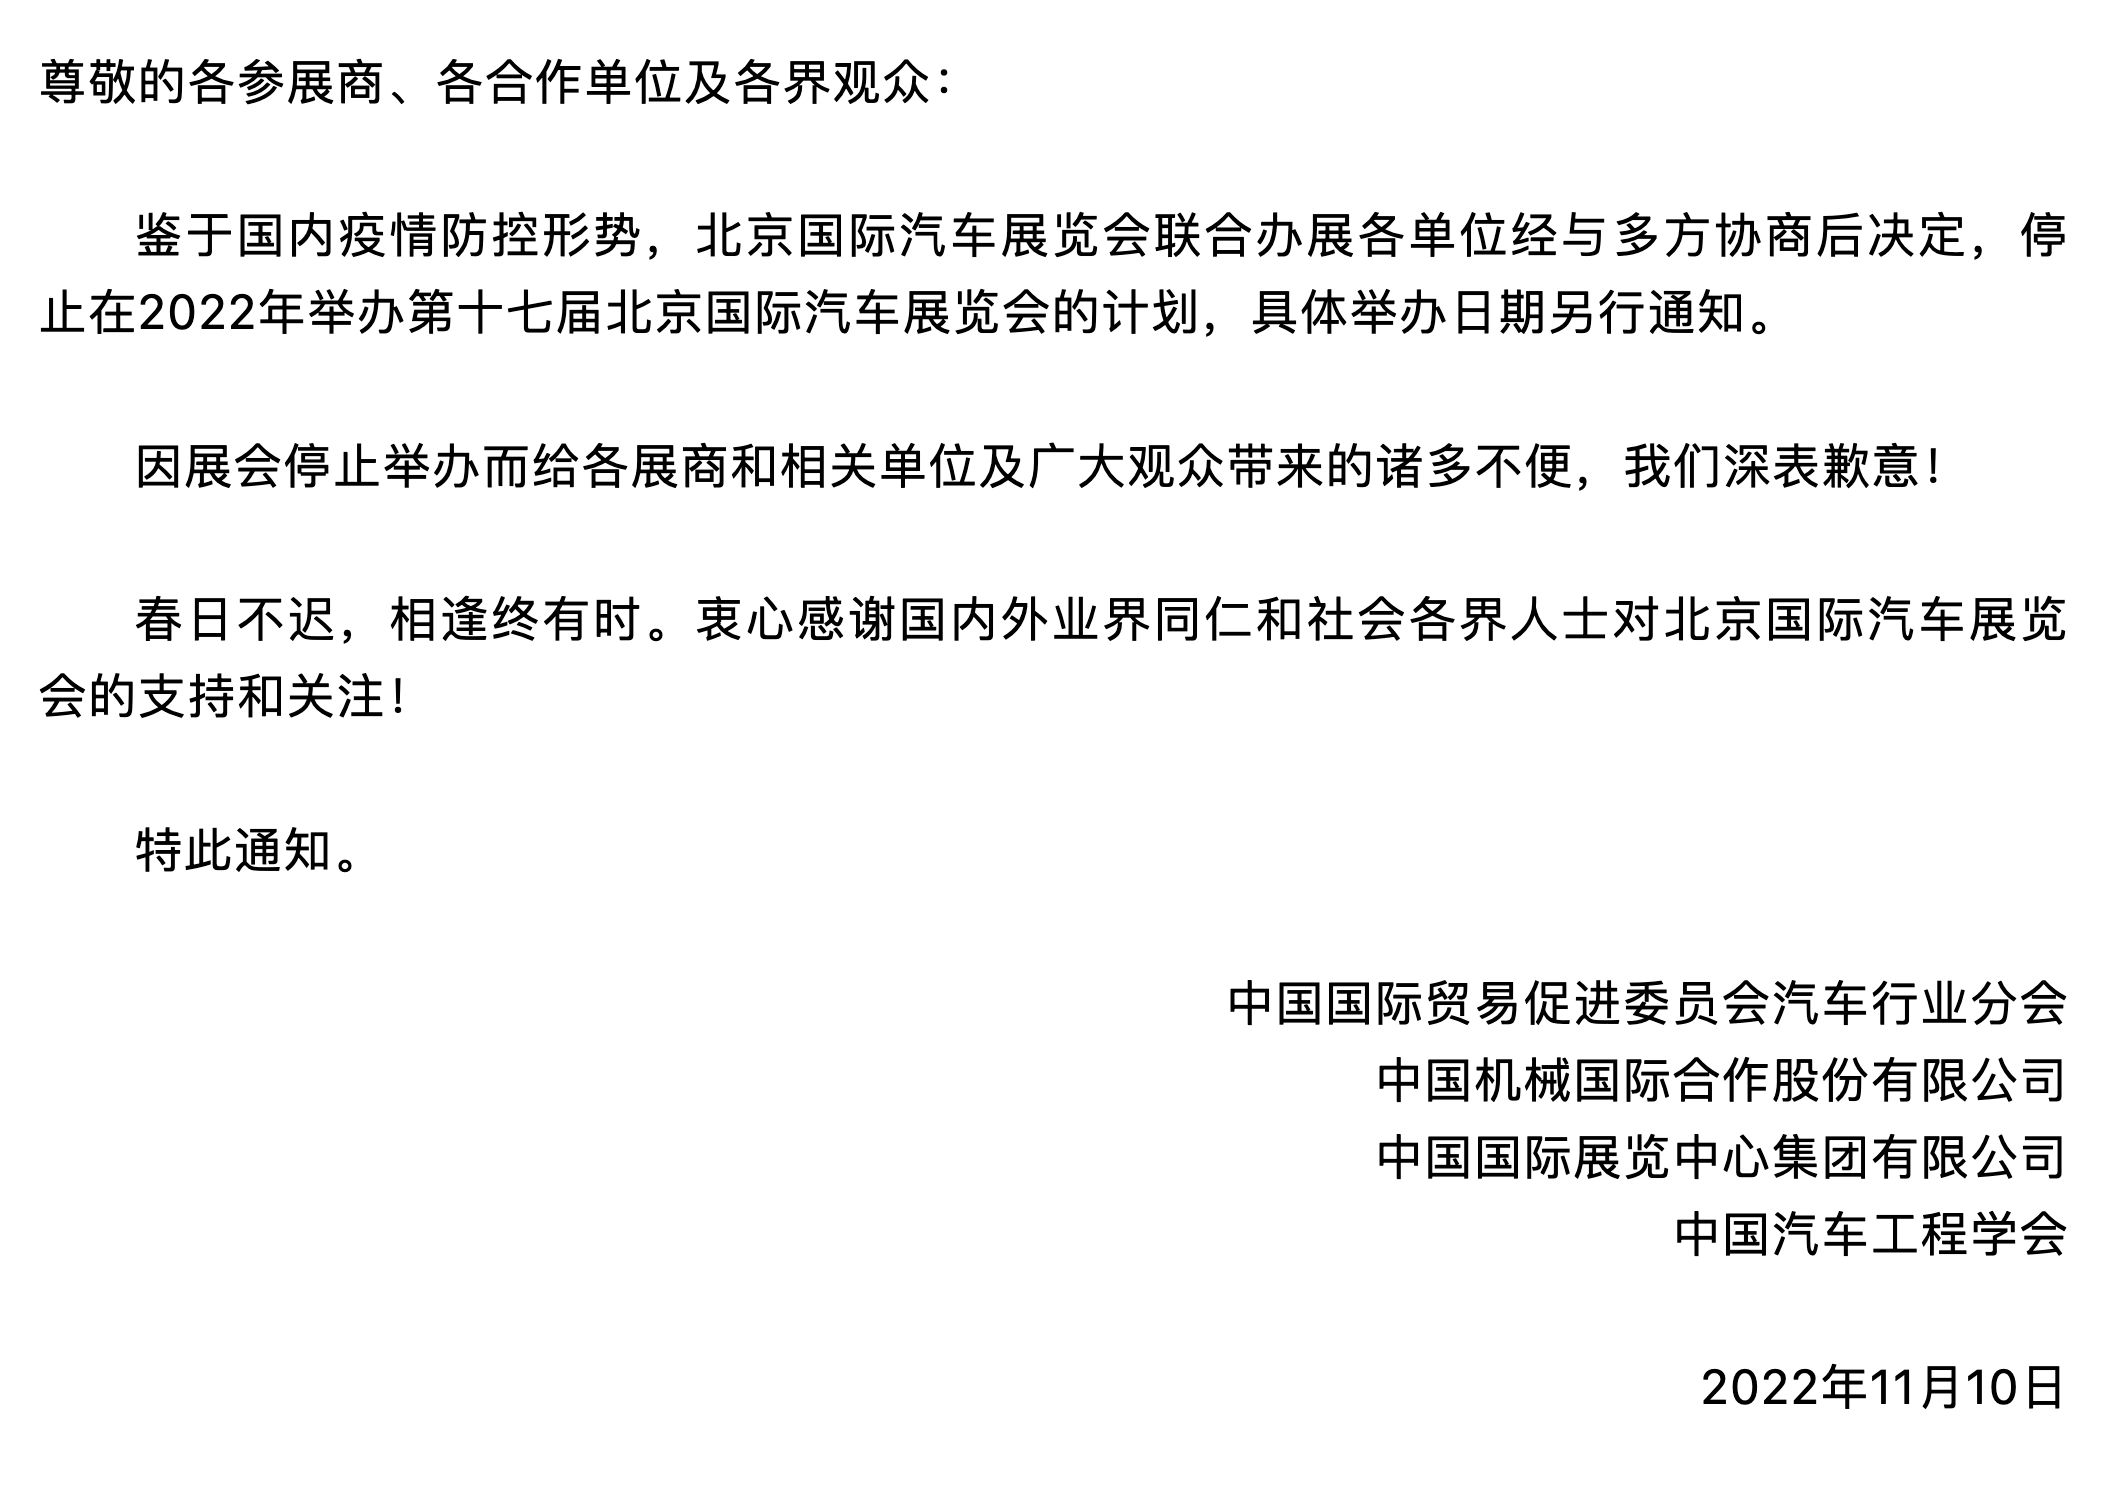 2022年北京國際車展停辦 具體舉辦日期另行通知